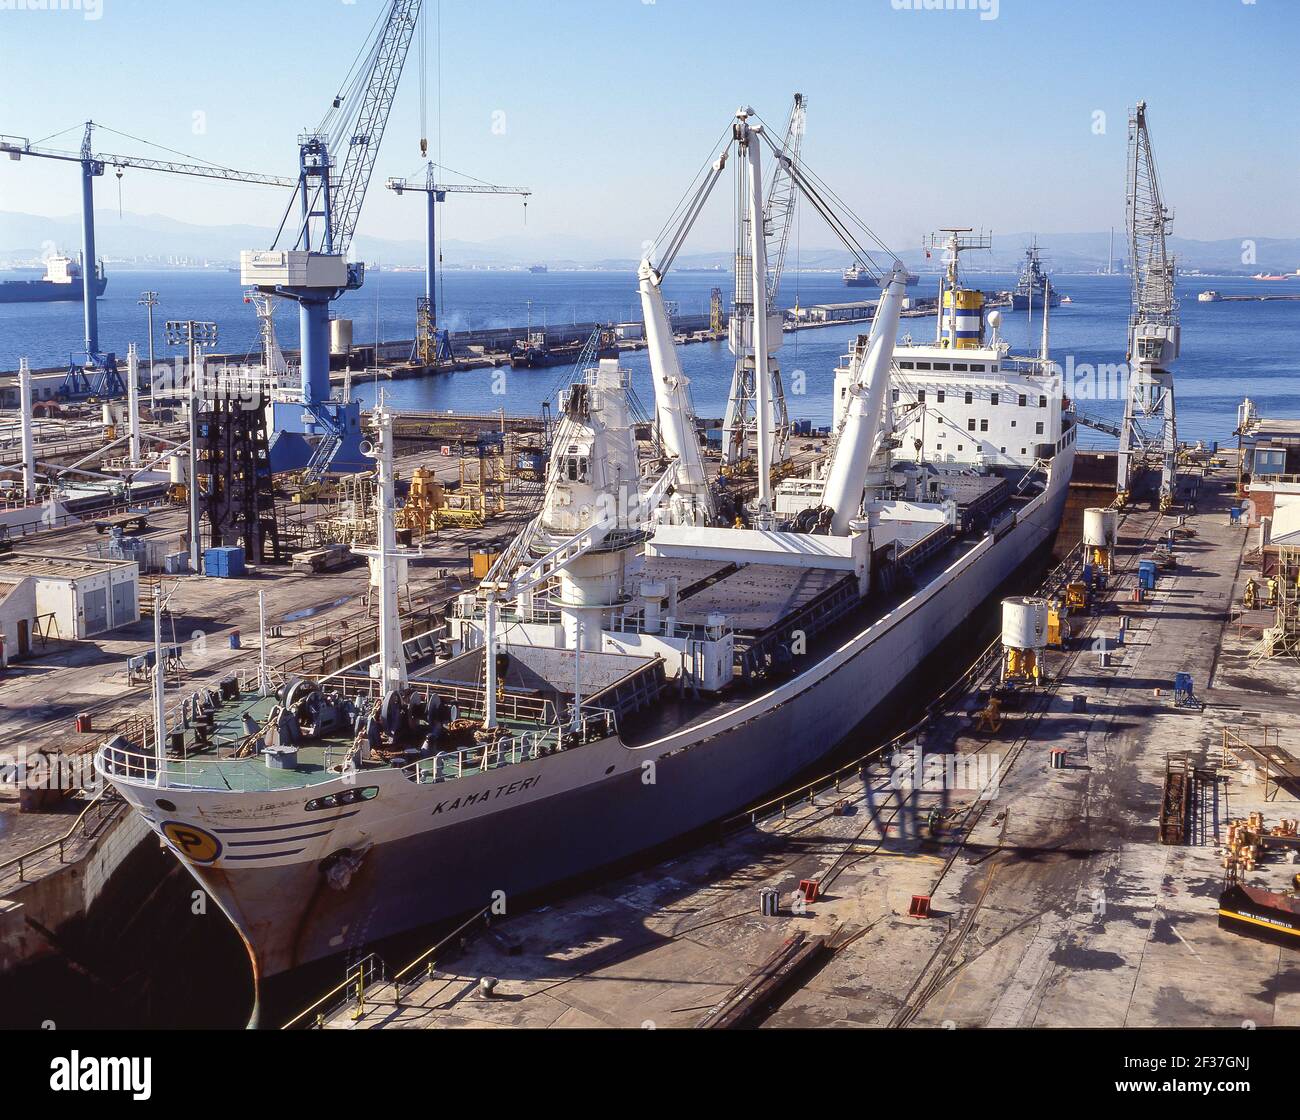 'Kamateri' general cargo ship in dry dock, Malta Dockyard, Grand Harbour, Valletta, Malta Stock Photo